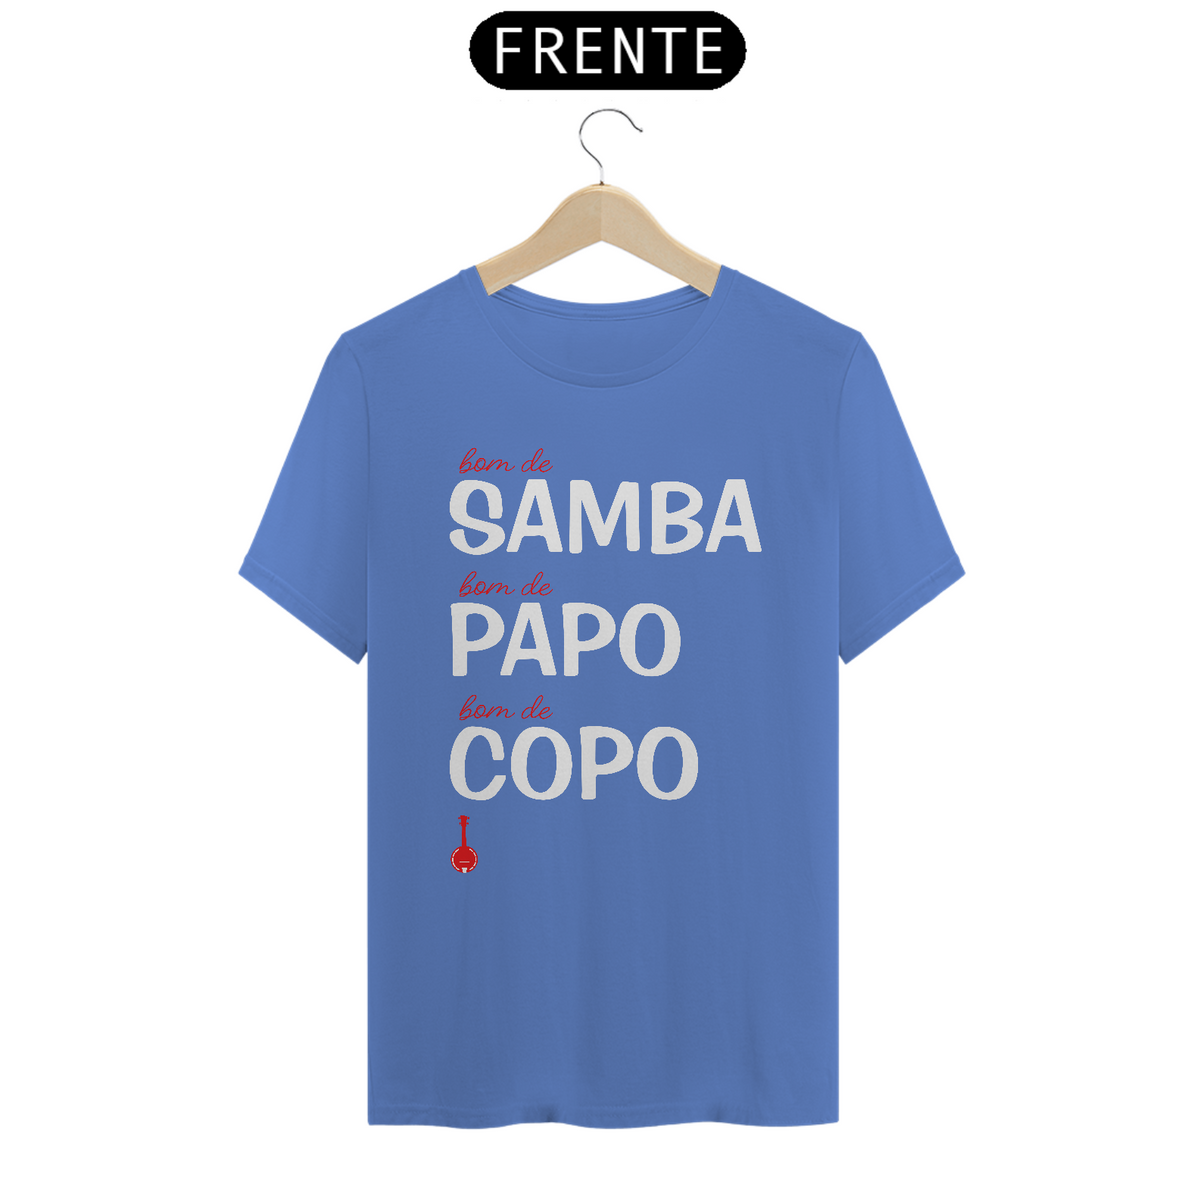 Nome do produto: Camiseta Bom de Samba, Bom de Papo, Bom de Copo - Estonada